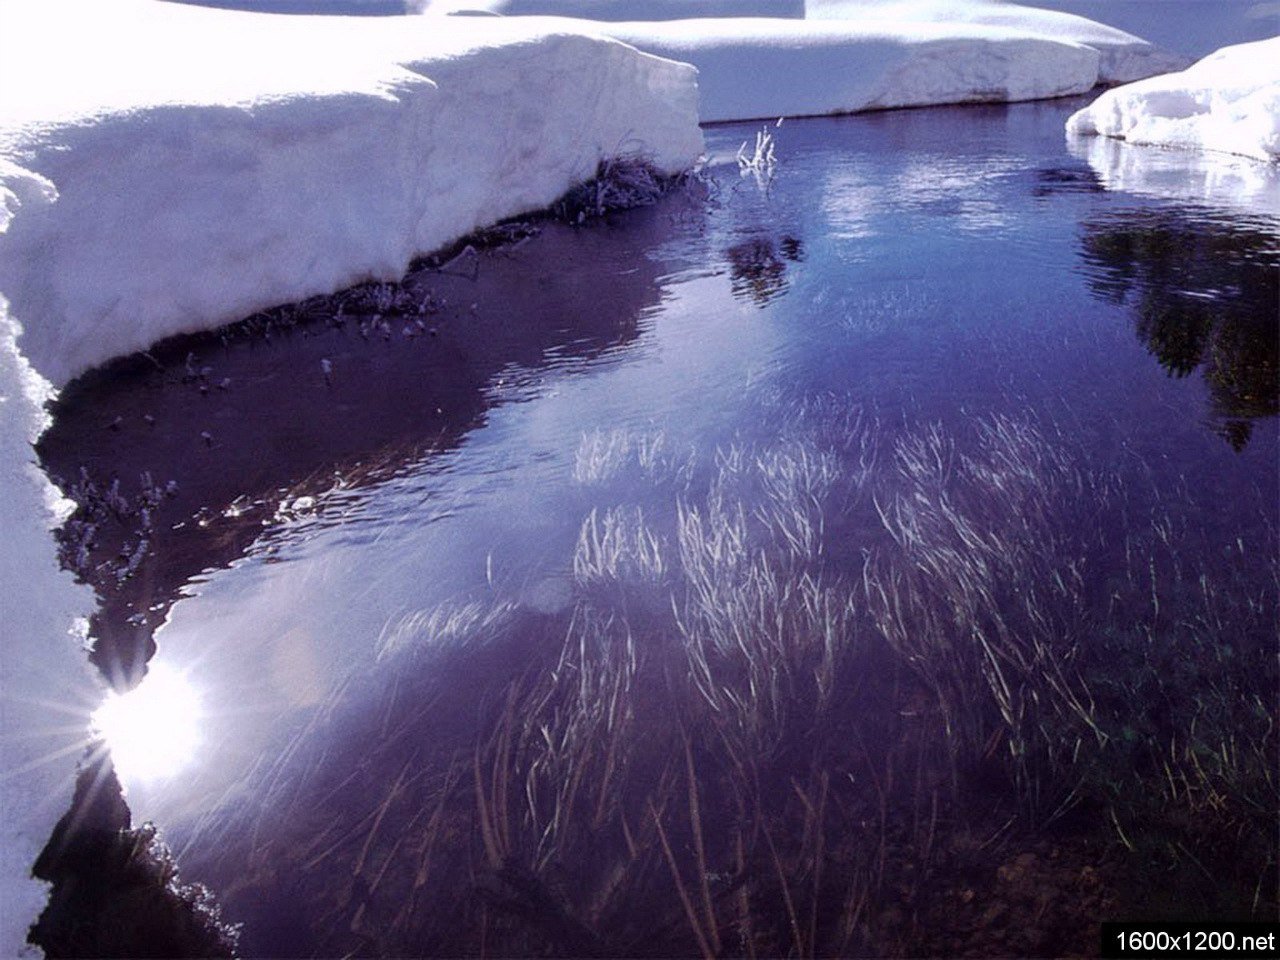 Вода в реке замерзла. Зимняя река подо льдом. Замерзшая вода. Лед на реке. Озеро подо льдом.